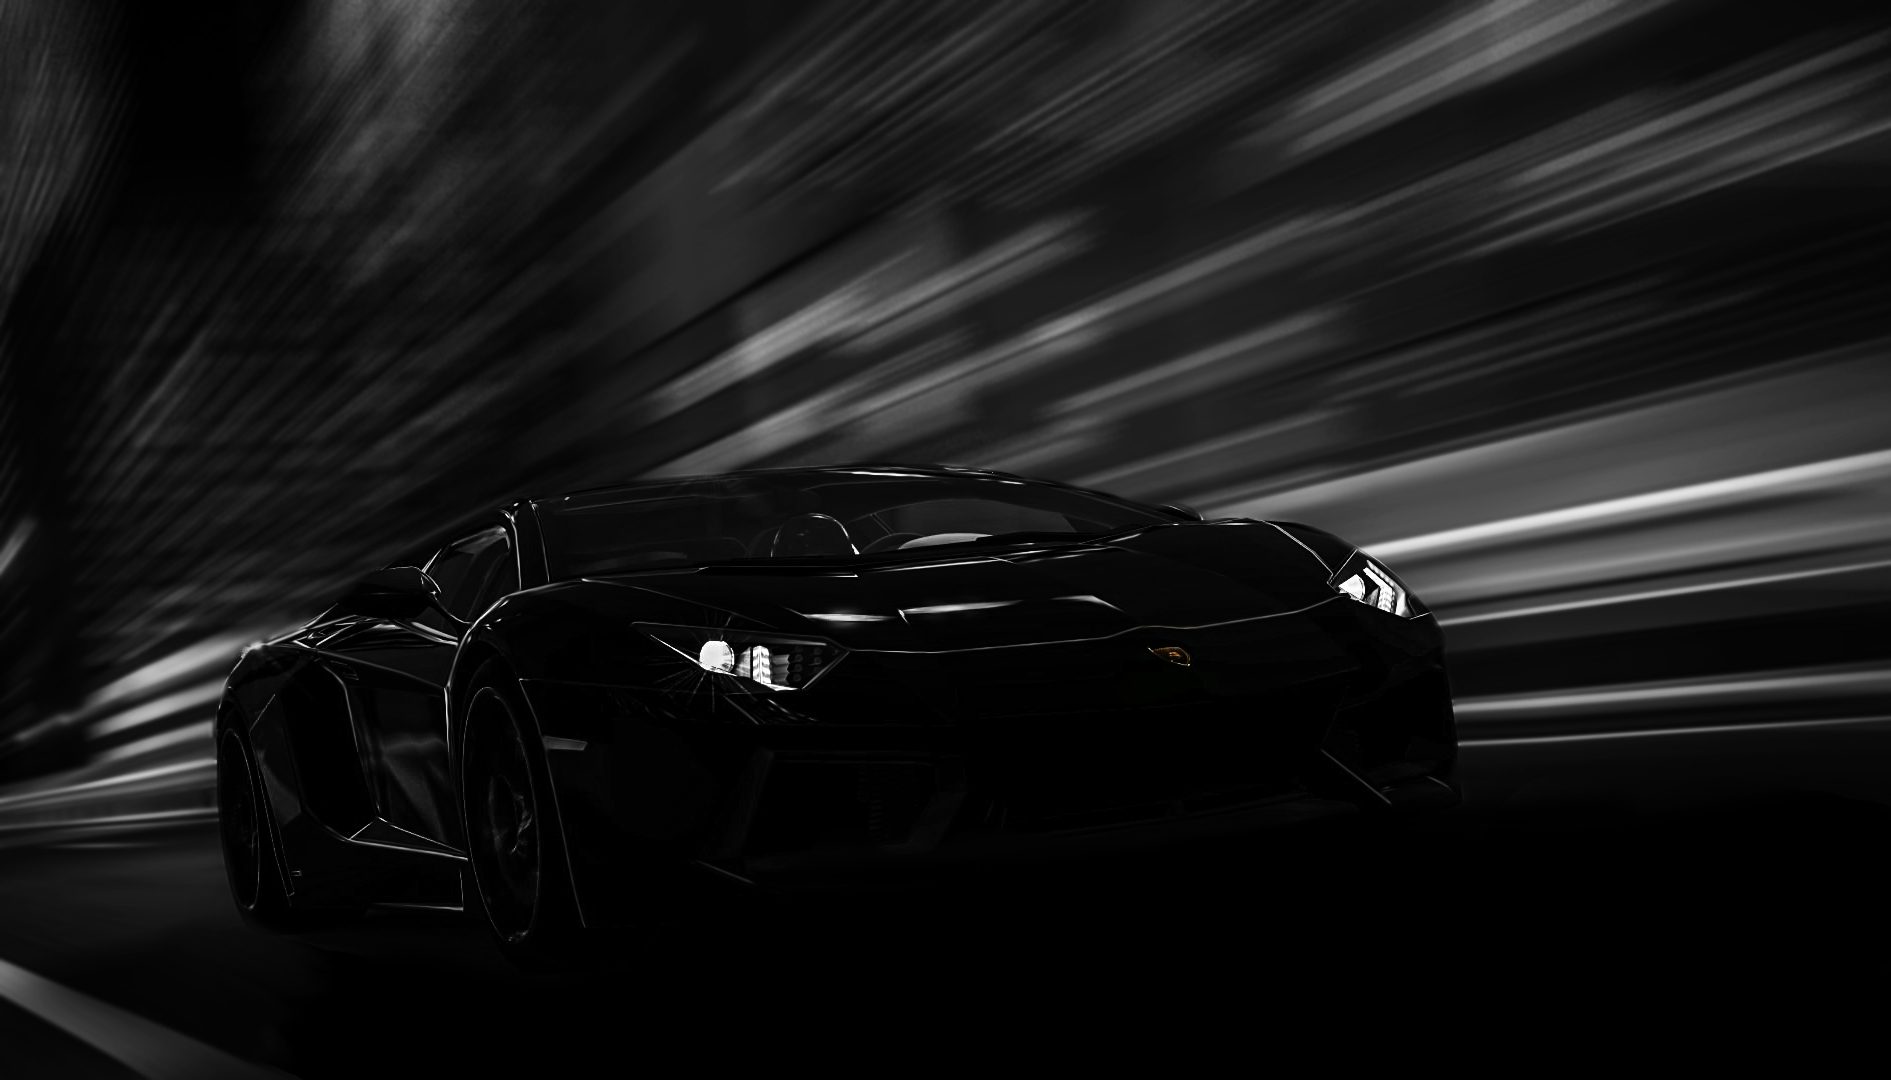 The Devil You Know - Lamborghini Aventador